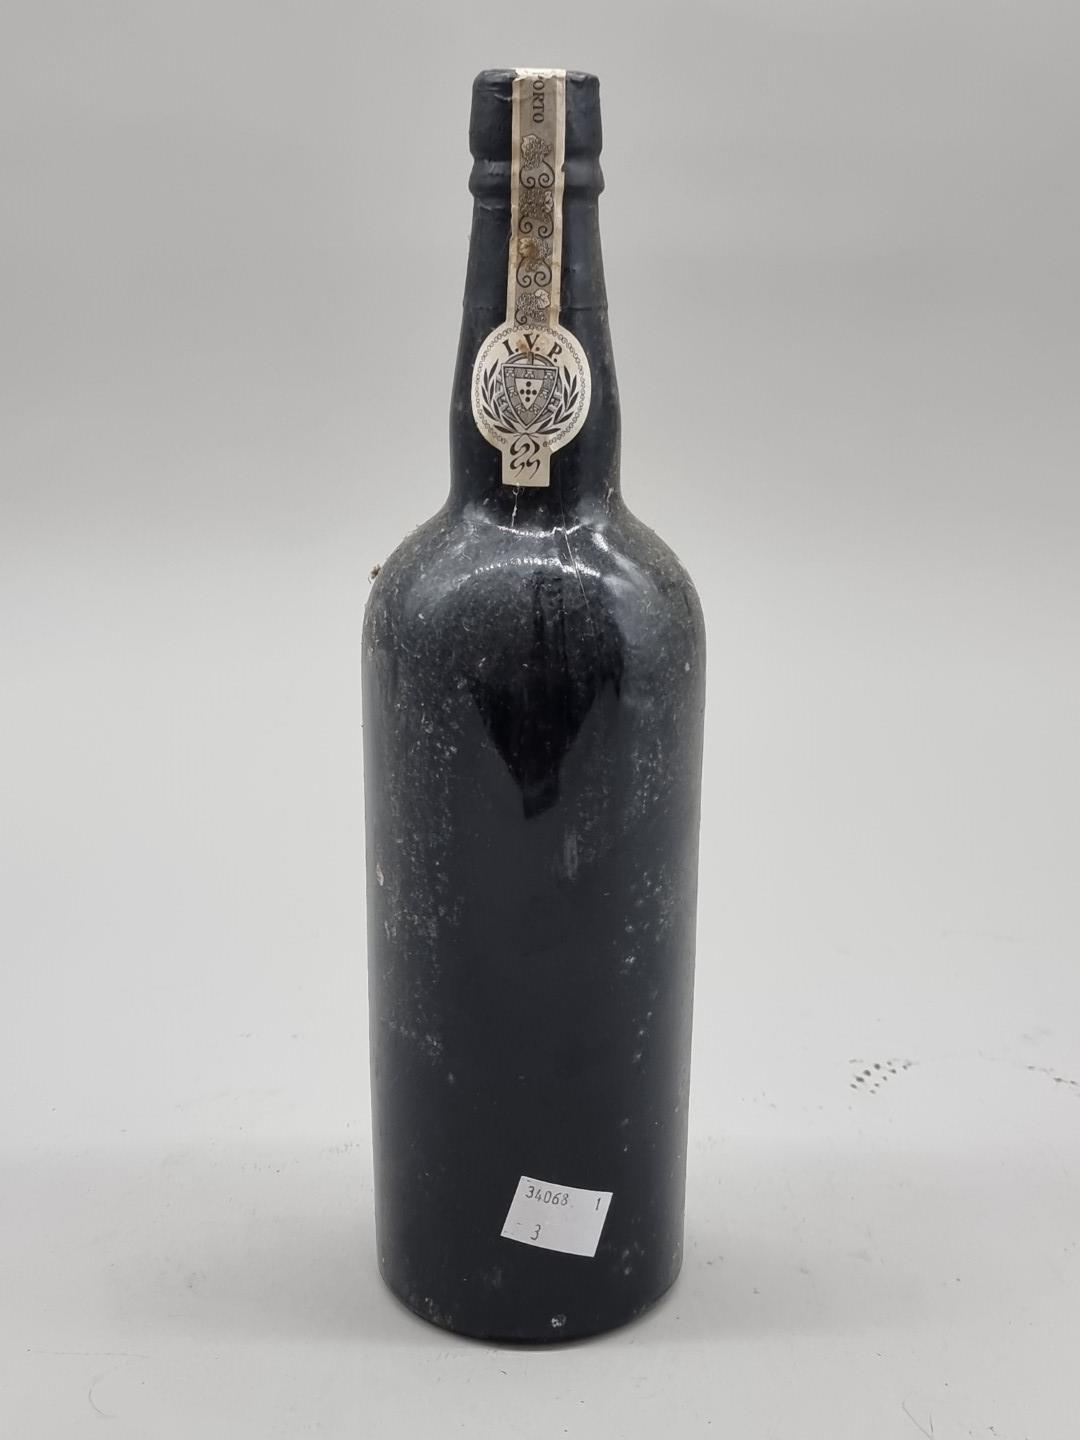 A bottle of Quinta Do Noval 1963 Vintage Port. - Image 4 of 6